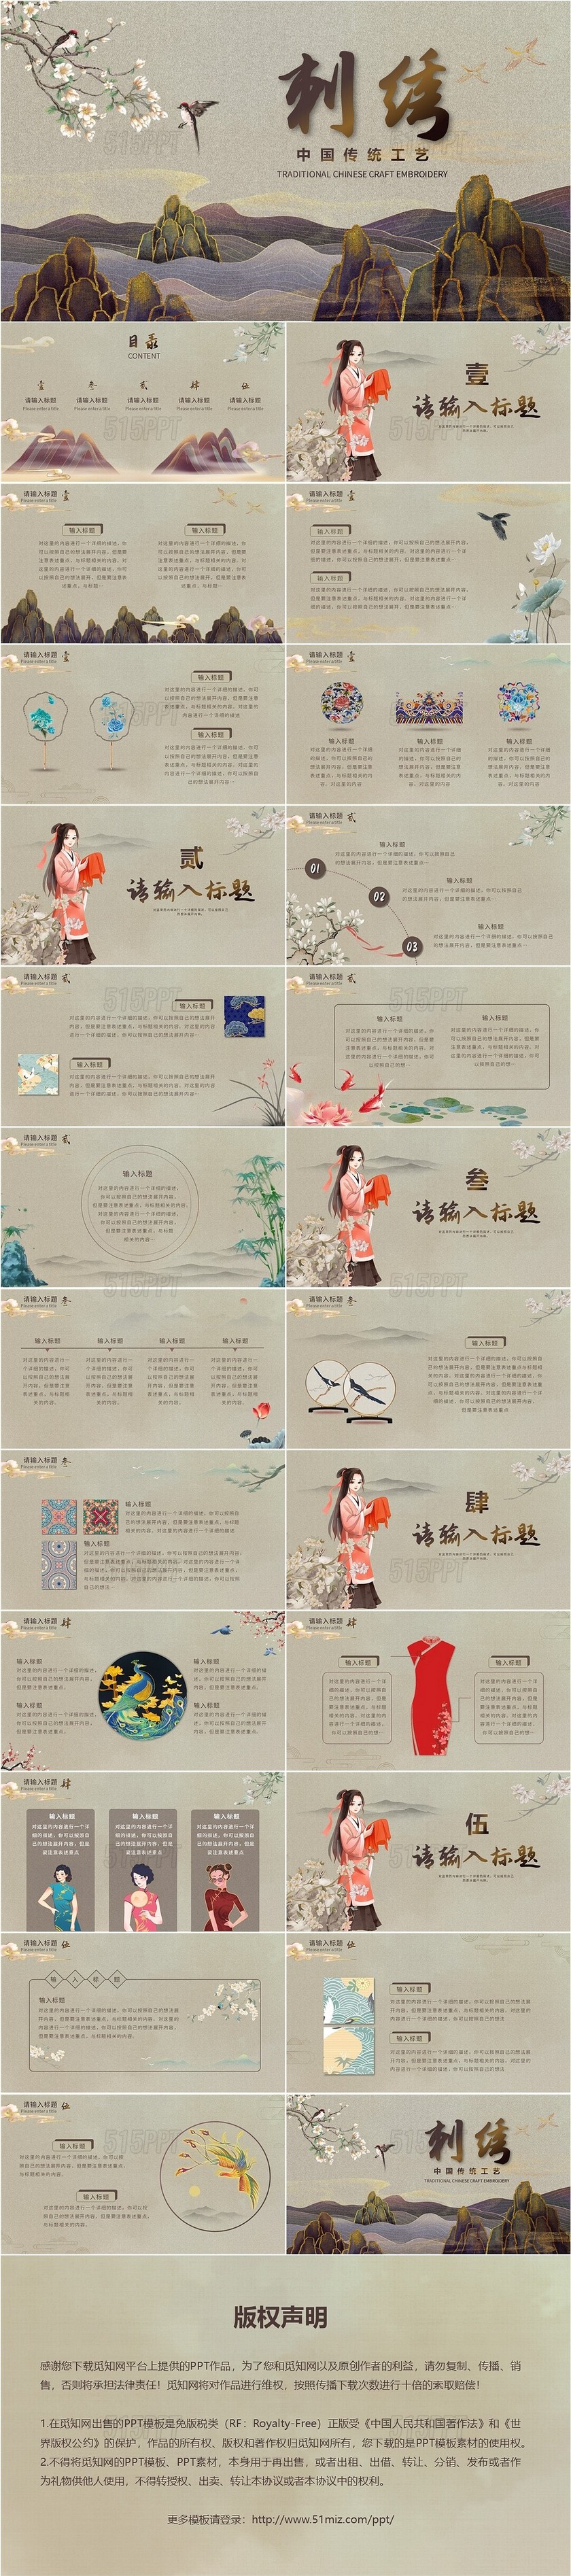 中国古典文化手工艺刺绣PPT模板